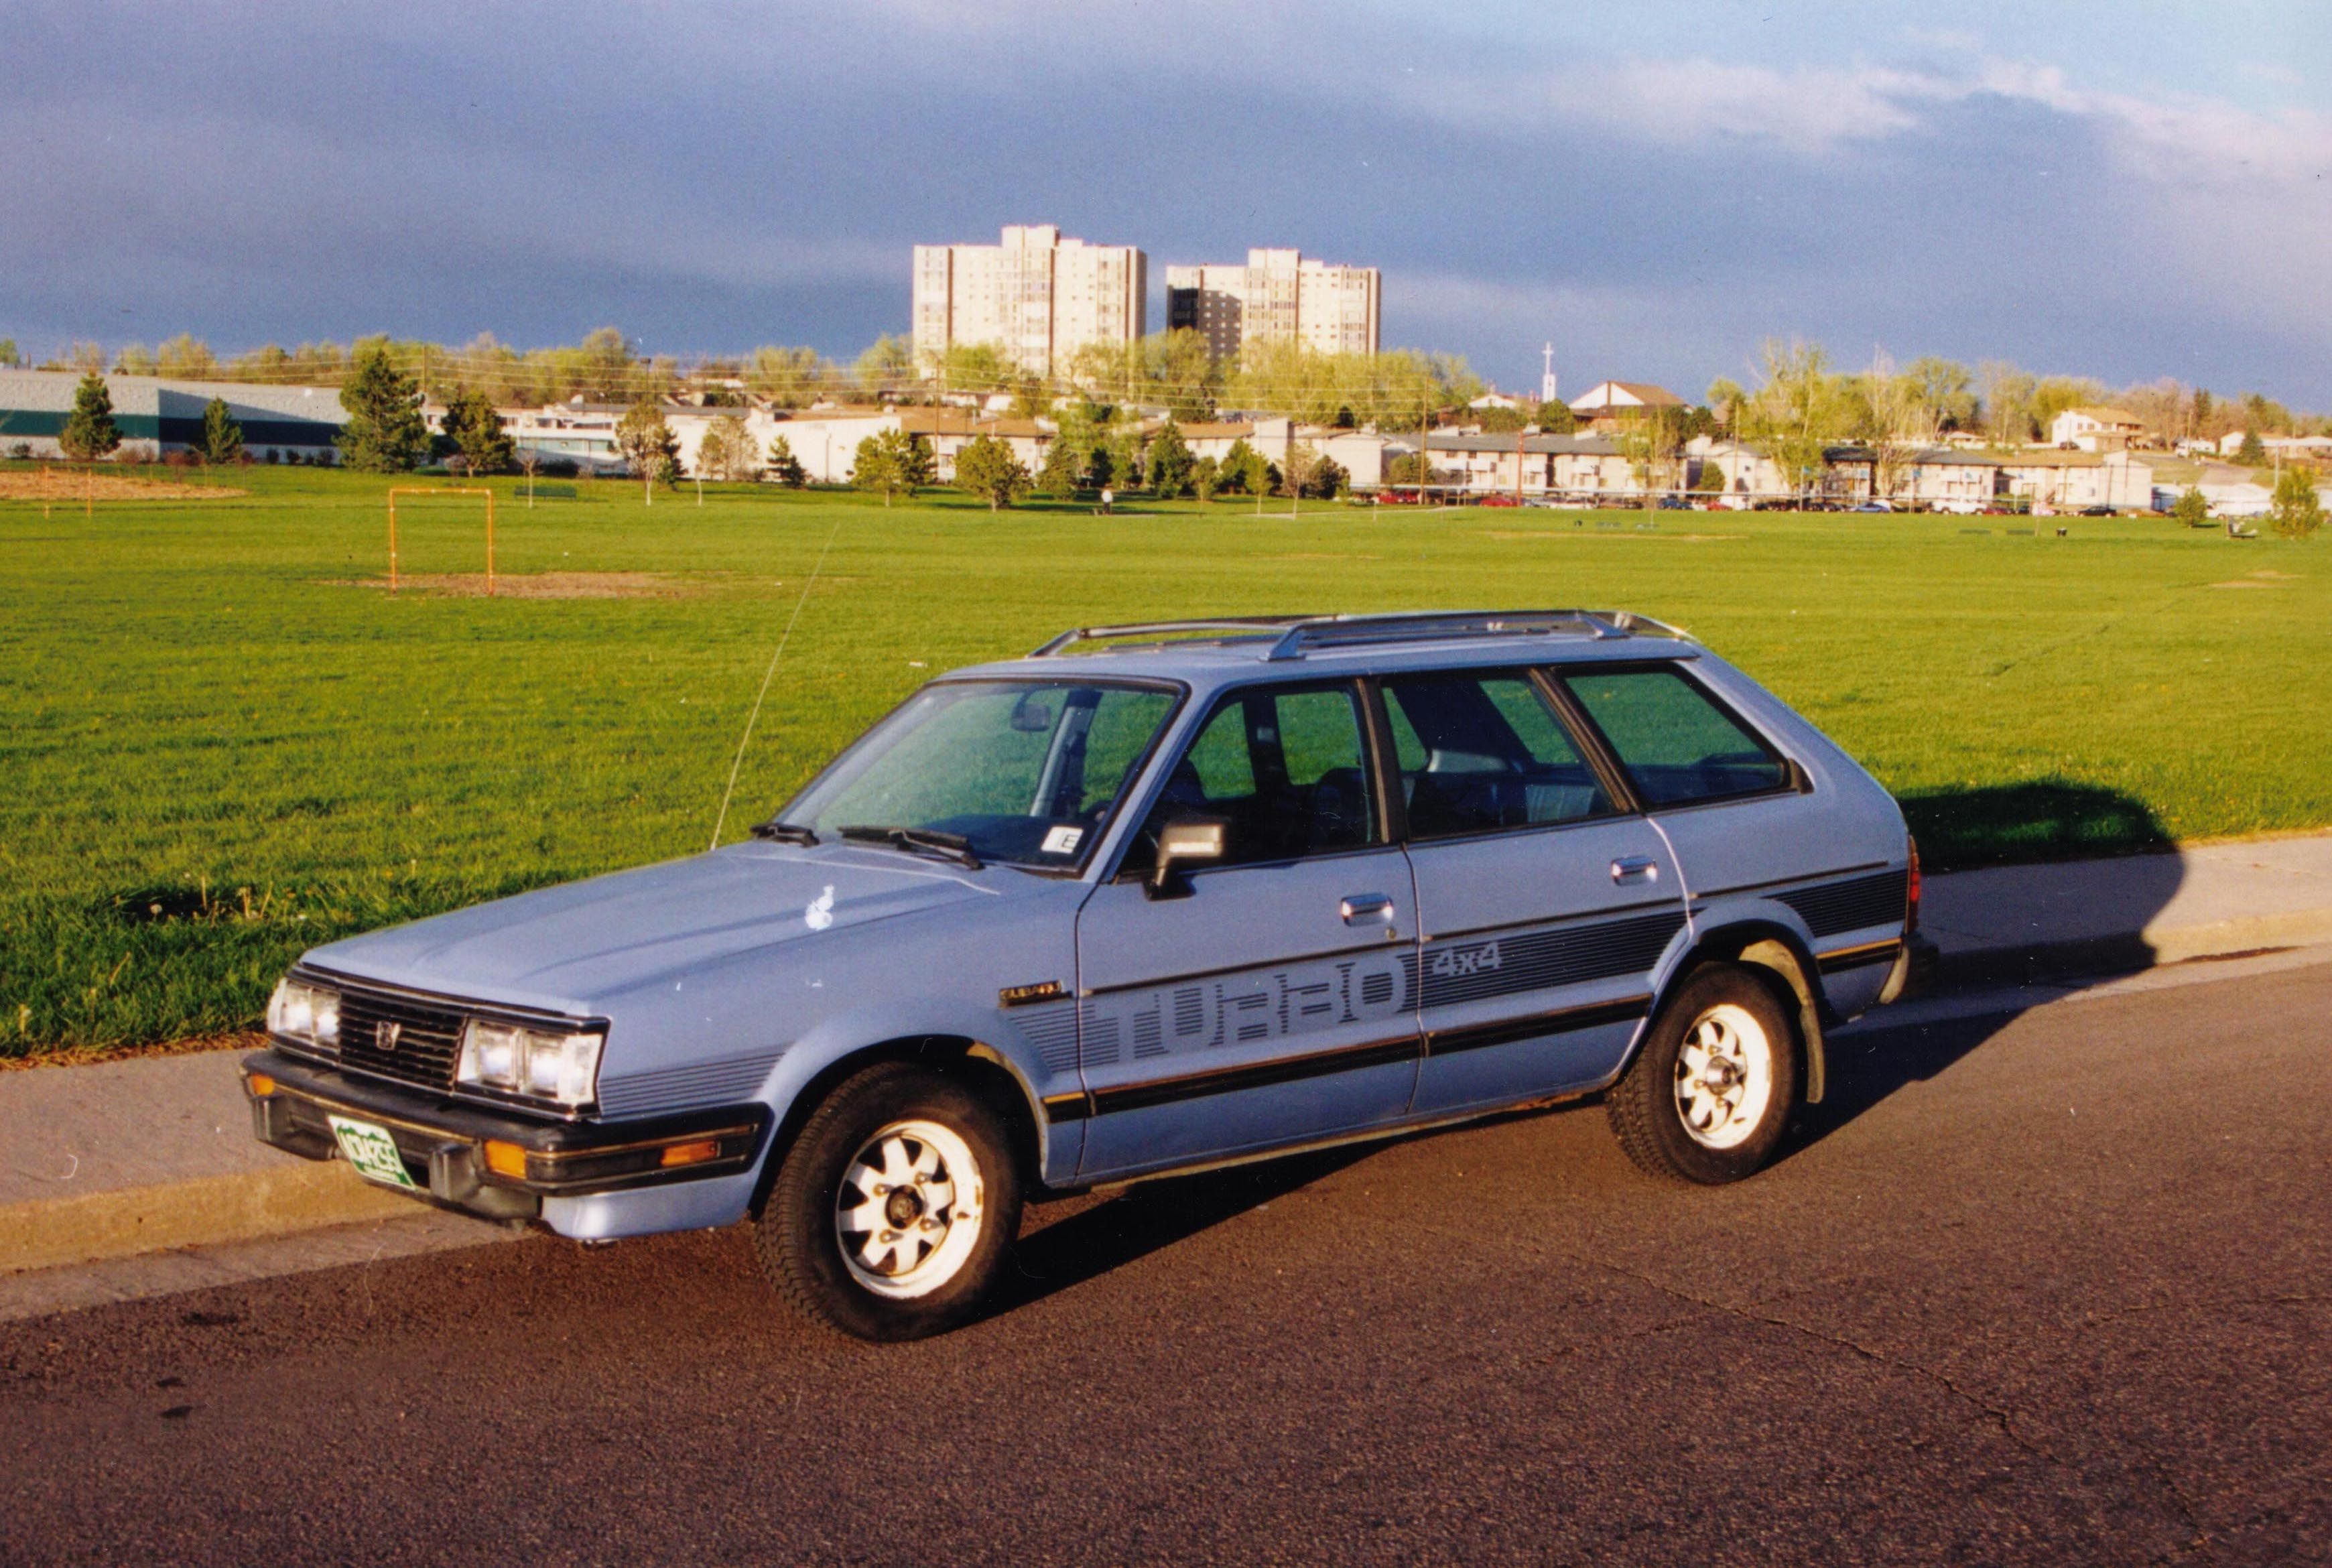 Subaru_1983_4X4_My_First_Car